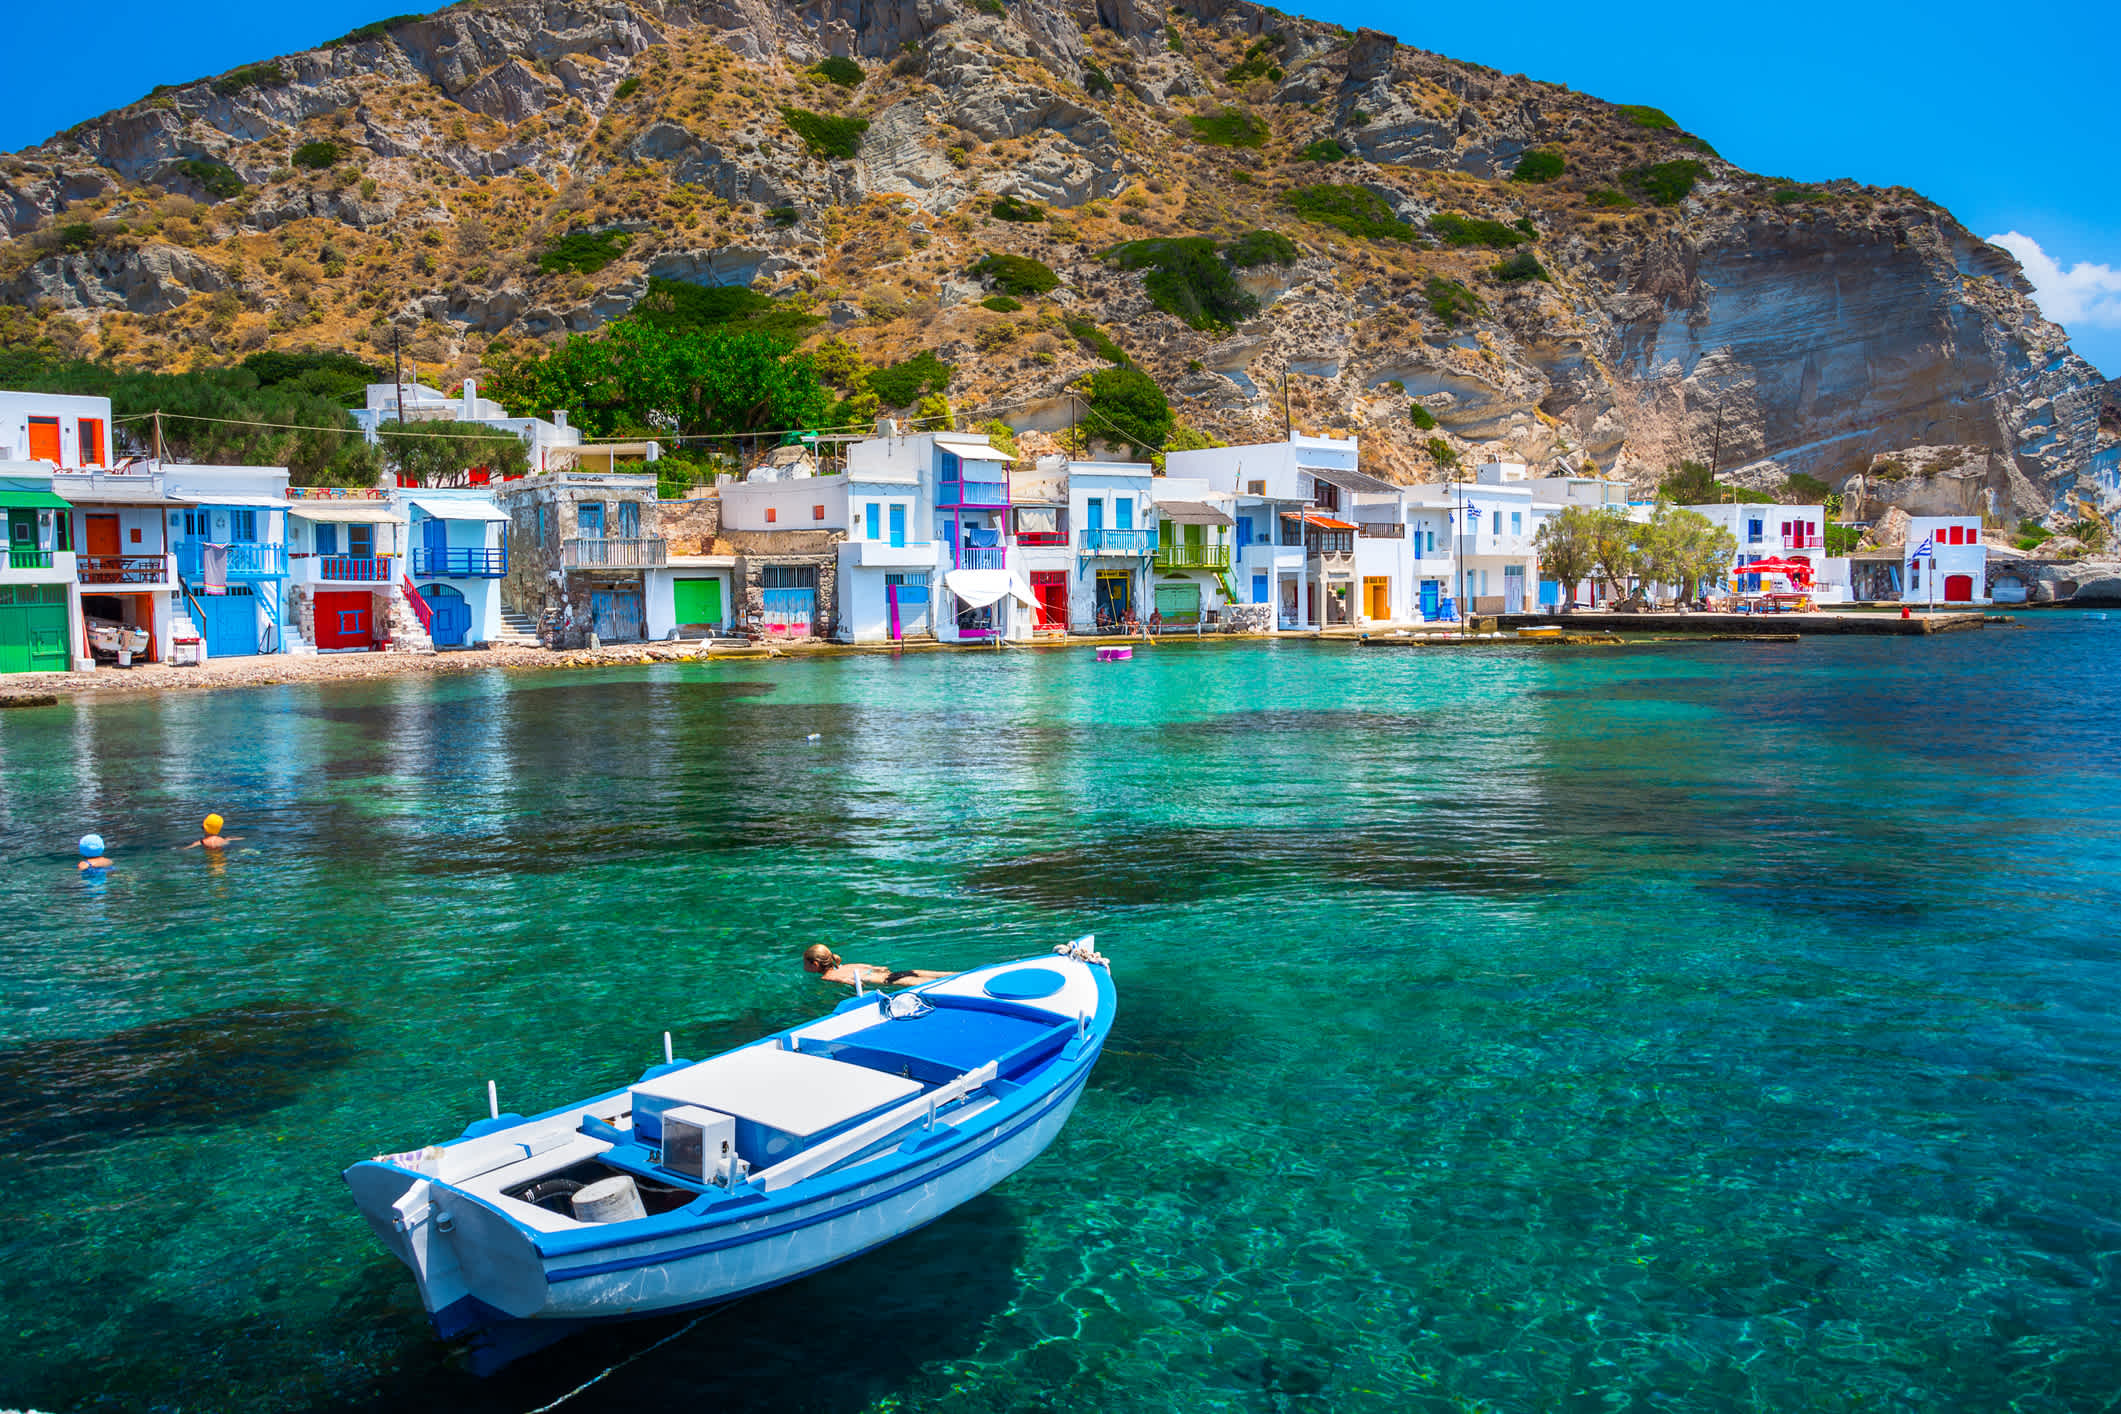 Landschaftlich reizvolle Dorfhäuser Klima (traditionelles griechisches Dorf am Meer, die Kykladen-Stil) mit aneinandergereihten - traditionelle Fischer, Insel Milos, Kykladen, Griechenland.